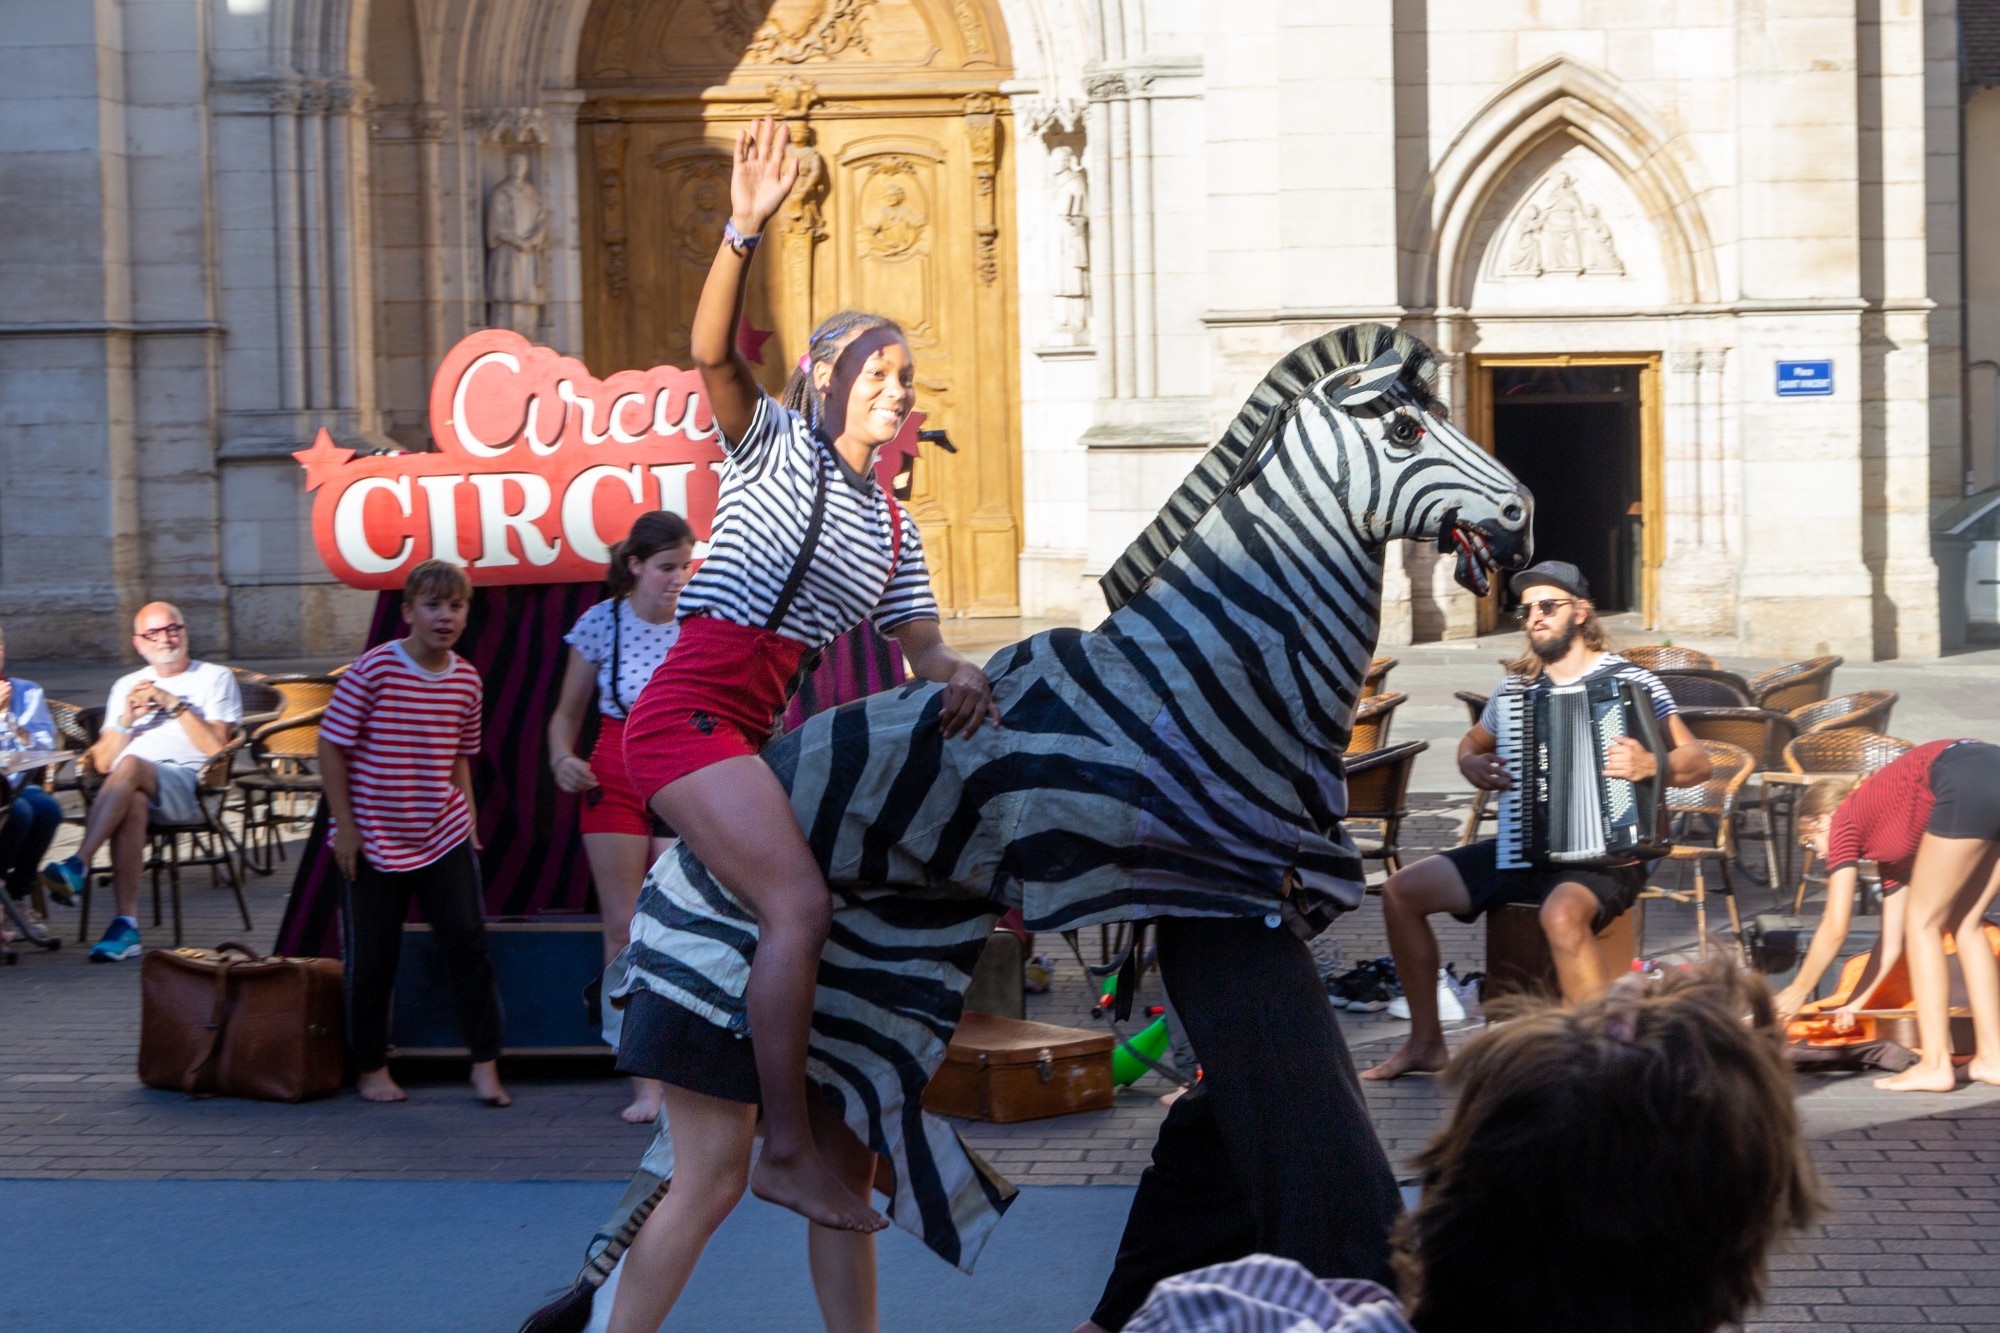 Auftritt Eine Artsitin reitet auf einer Zebra Figur.